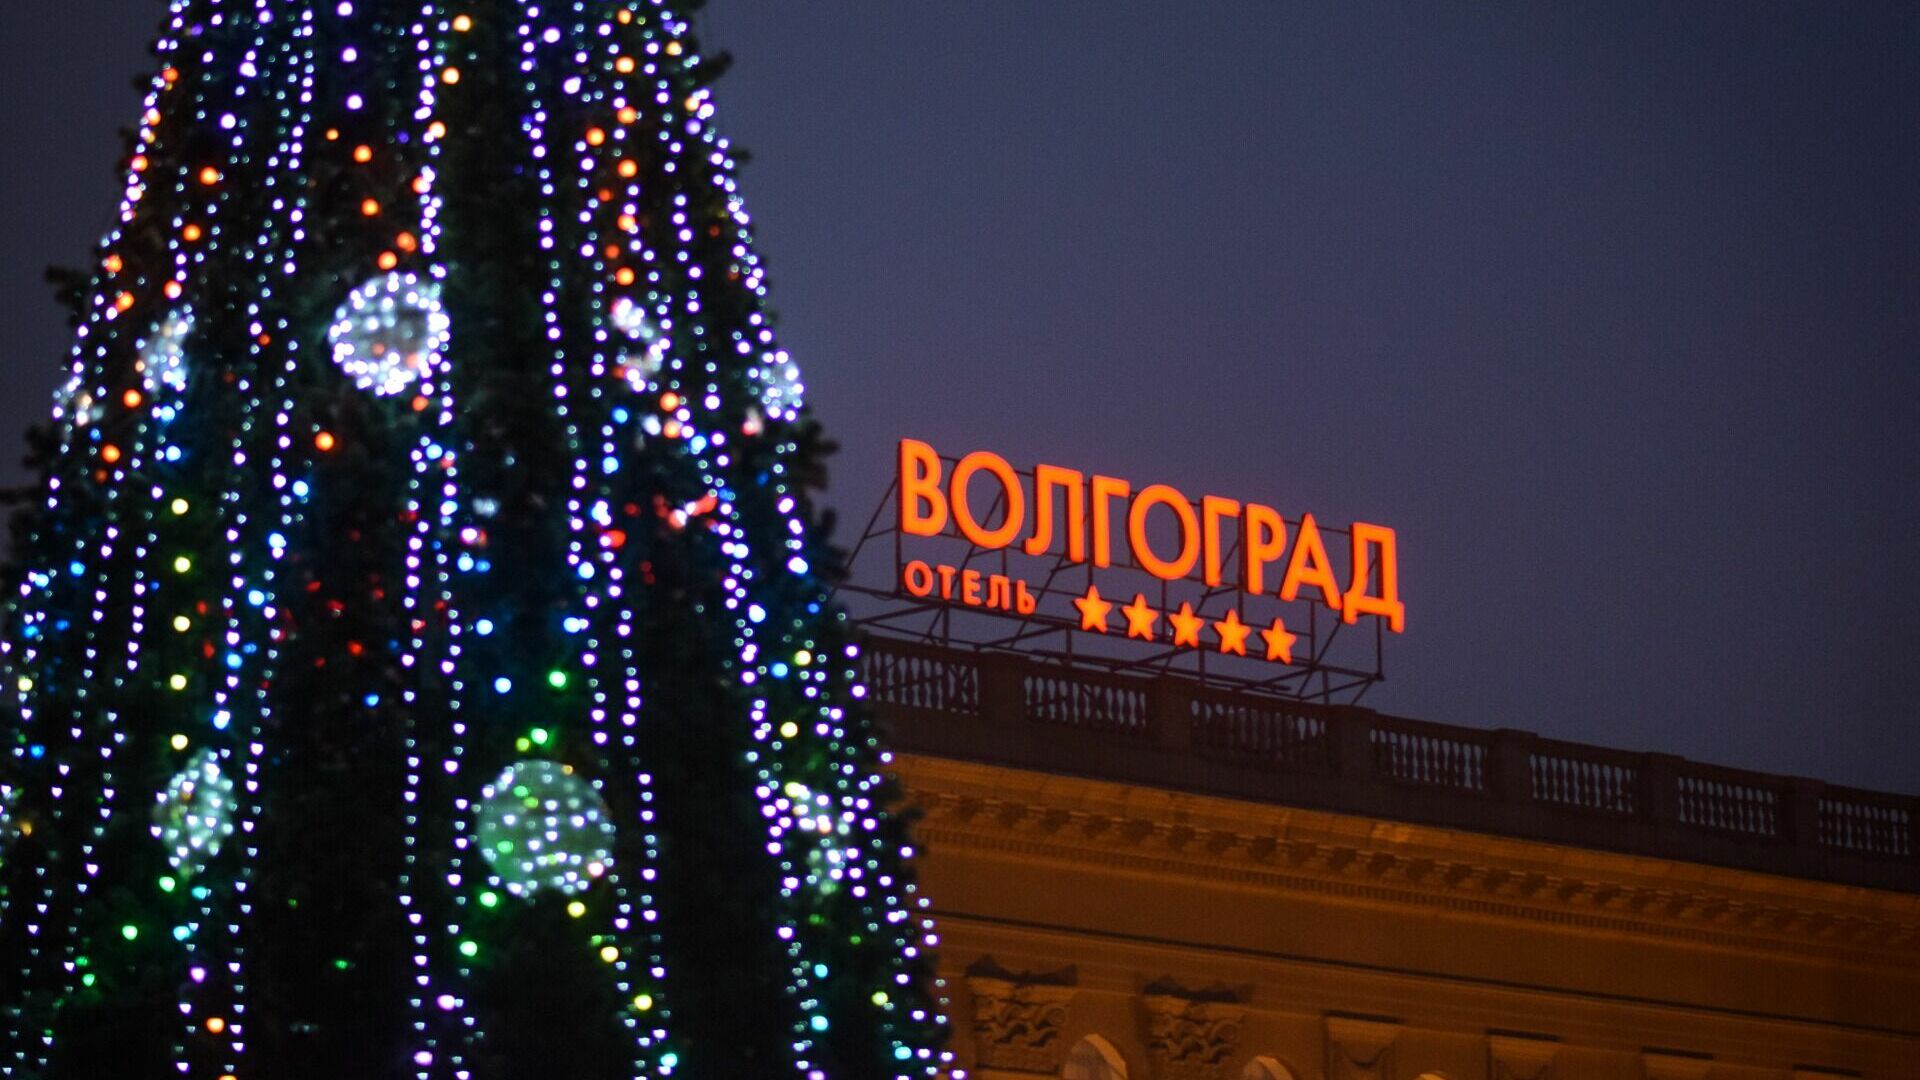 Тысячу сладких подарков раздаст Дед Мороз в двух парках Волгограда